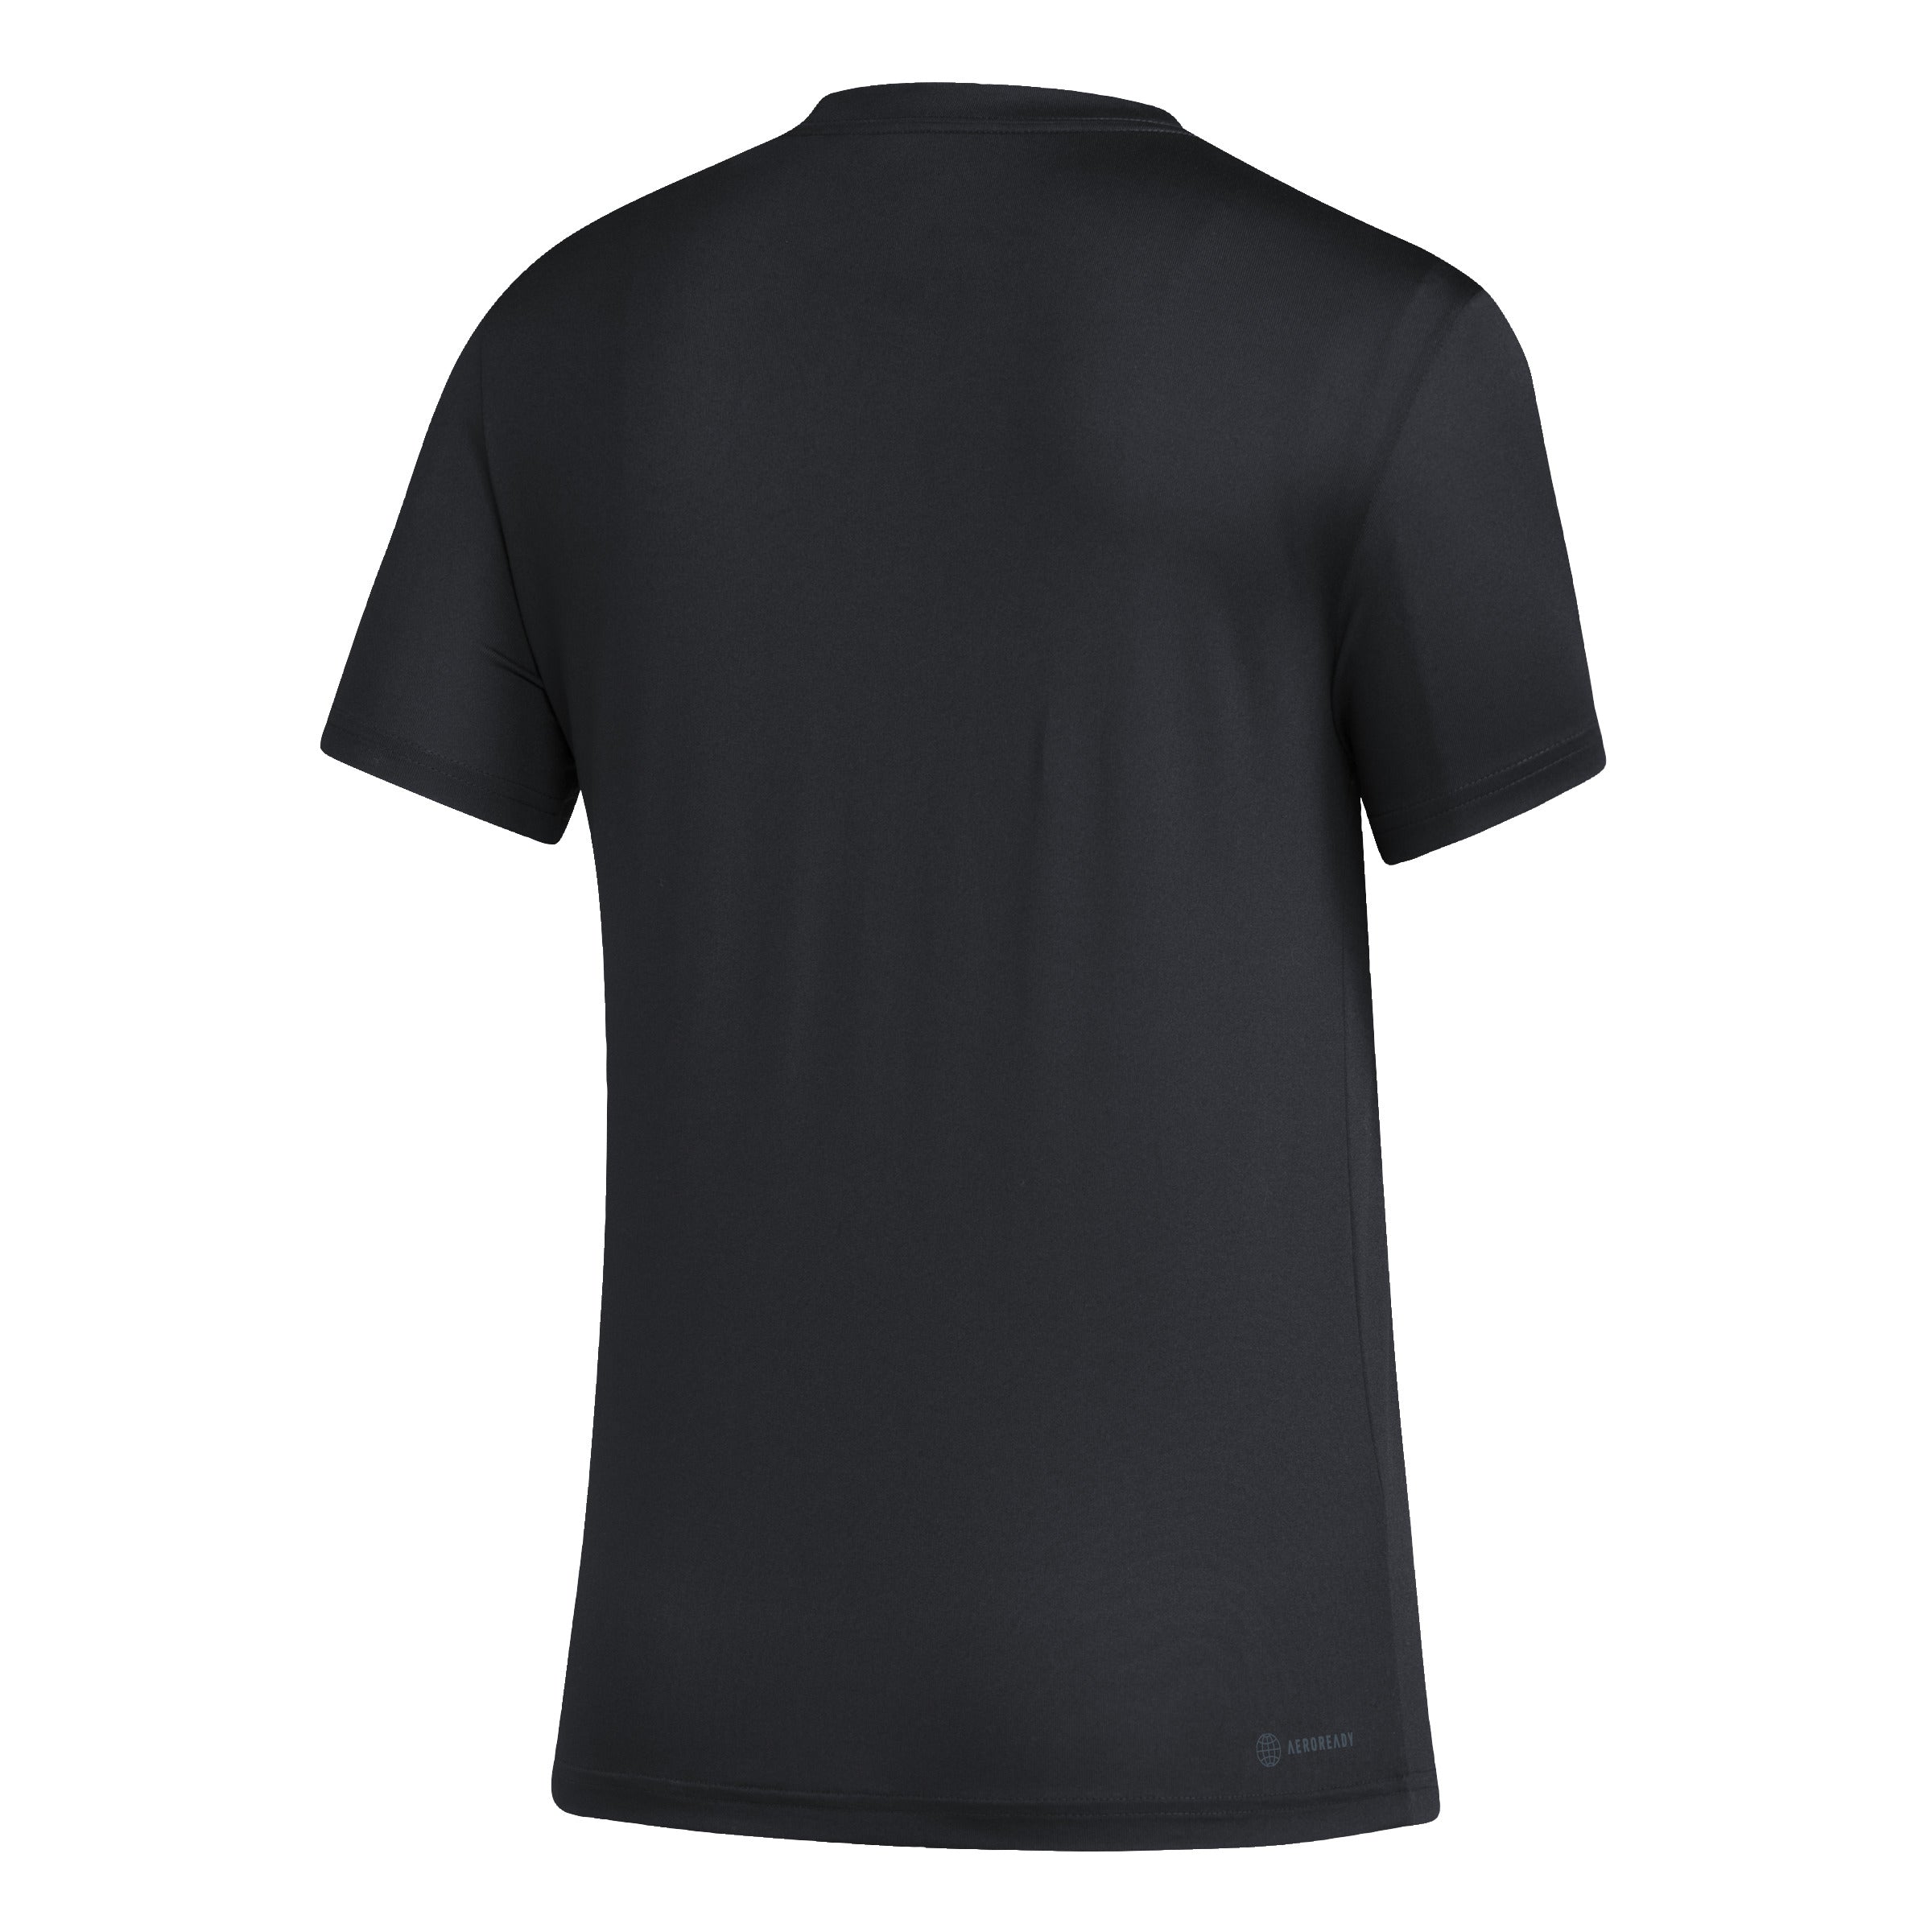 Inter Miami CF adidas Women's Icon Pregame T-Shirt - Black